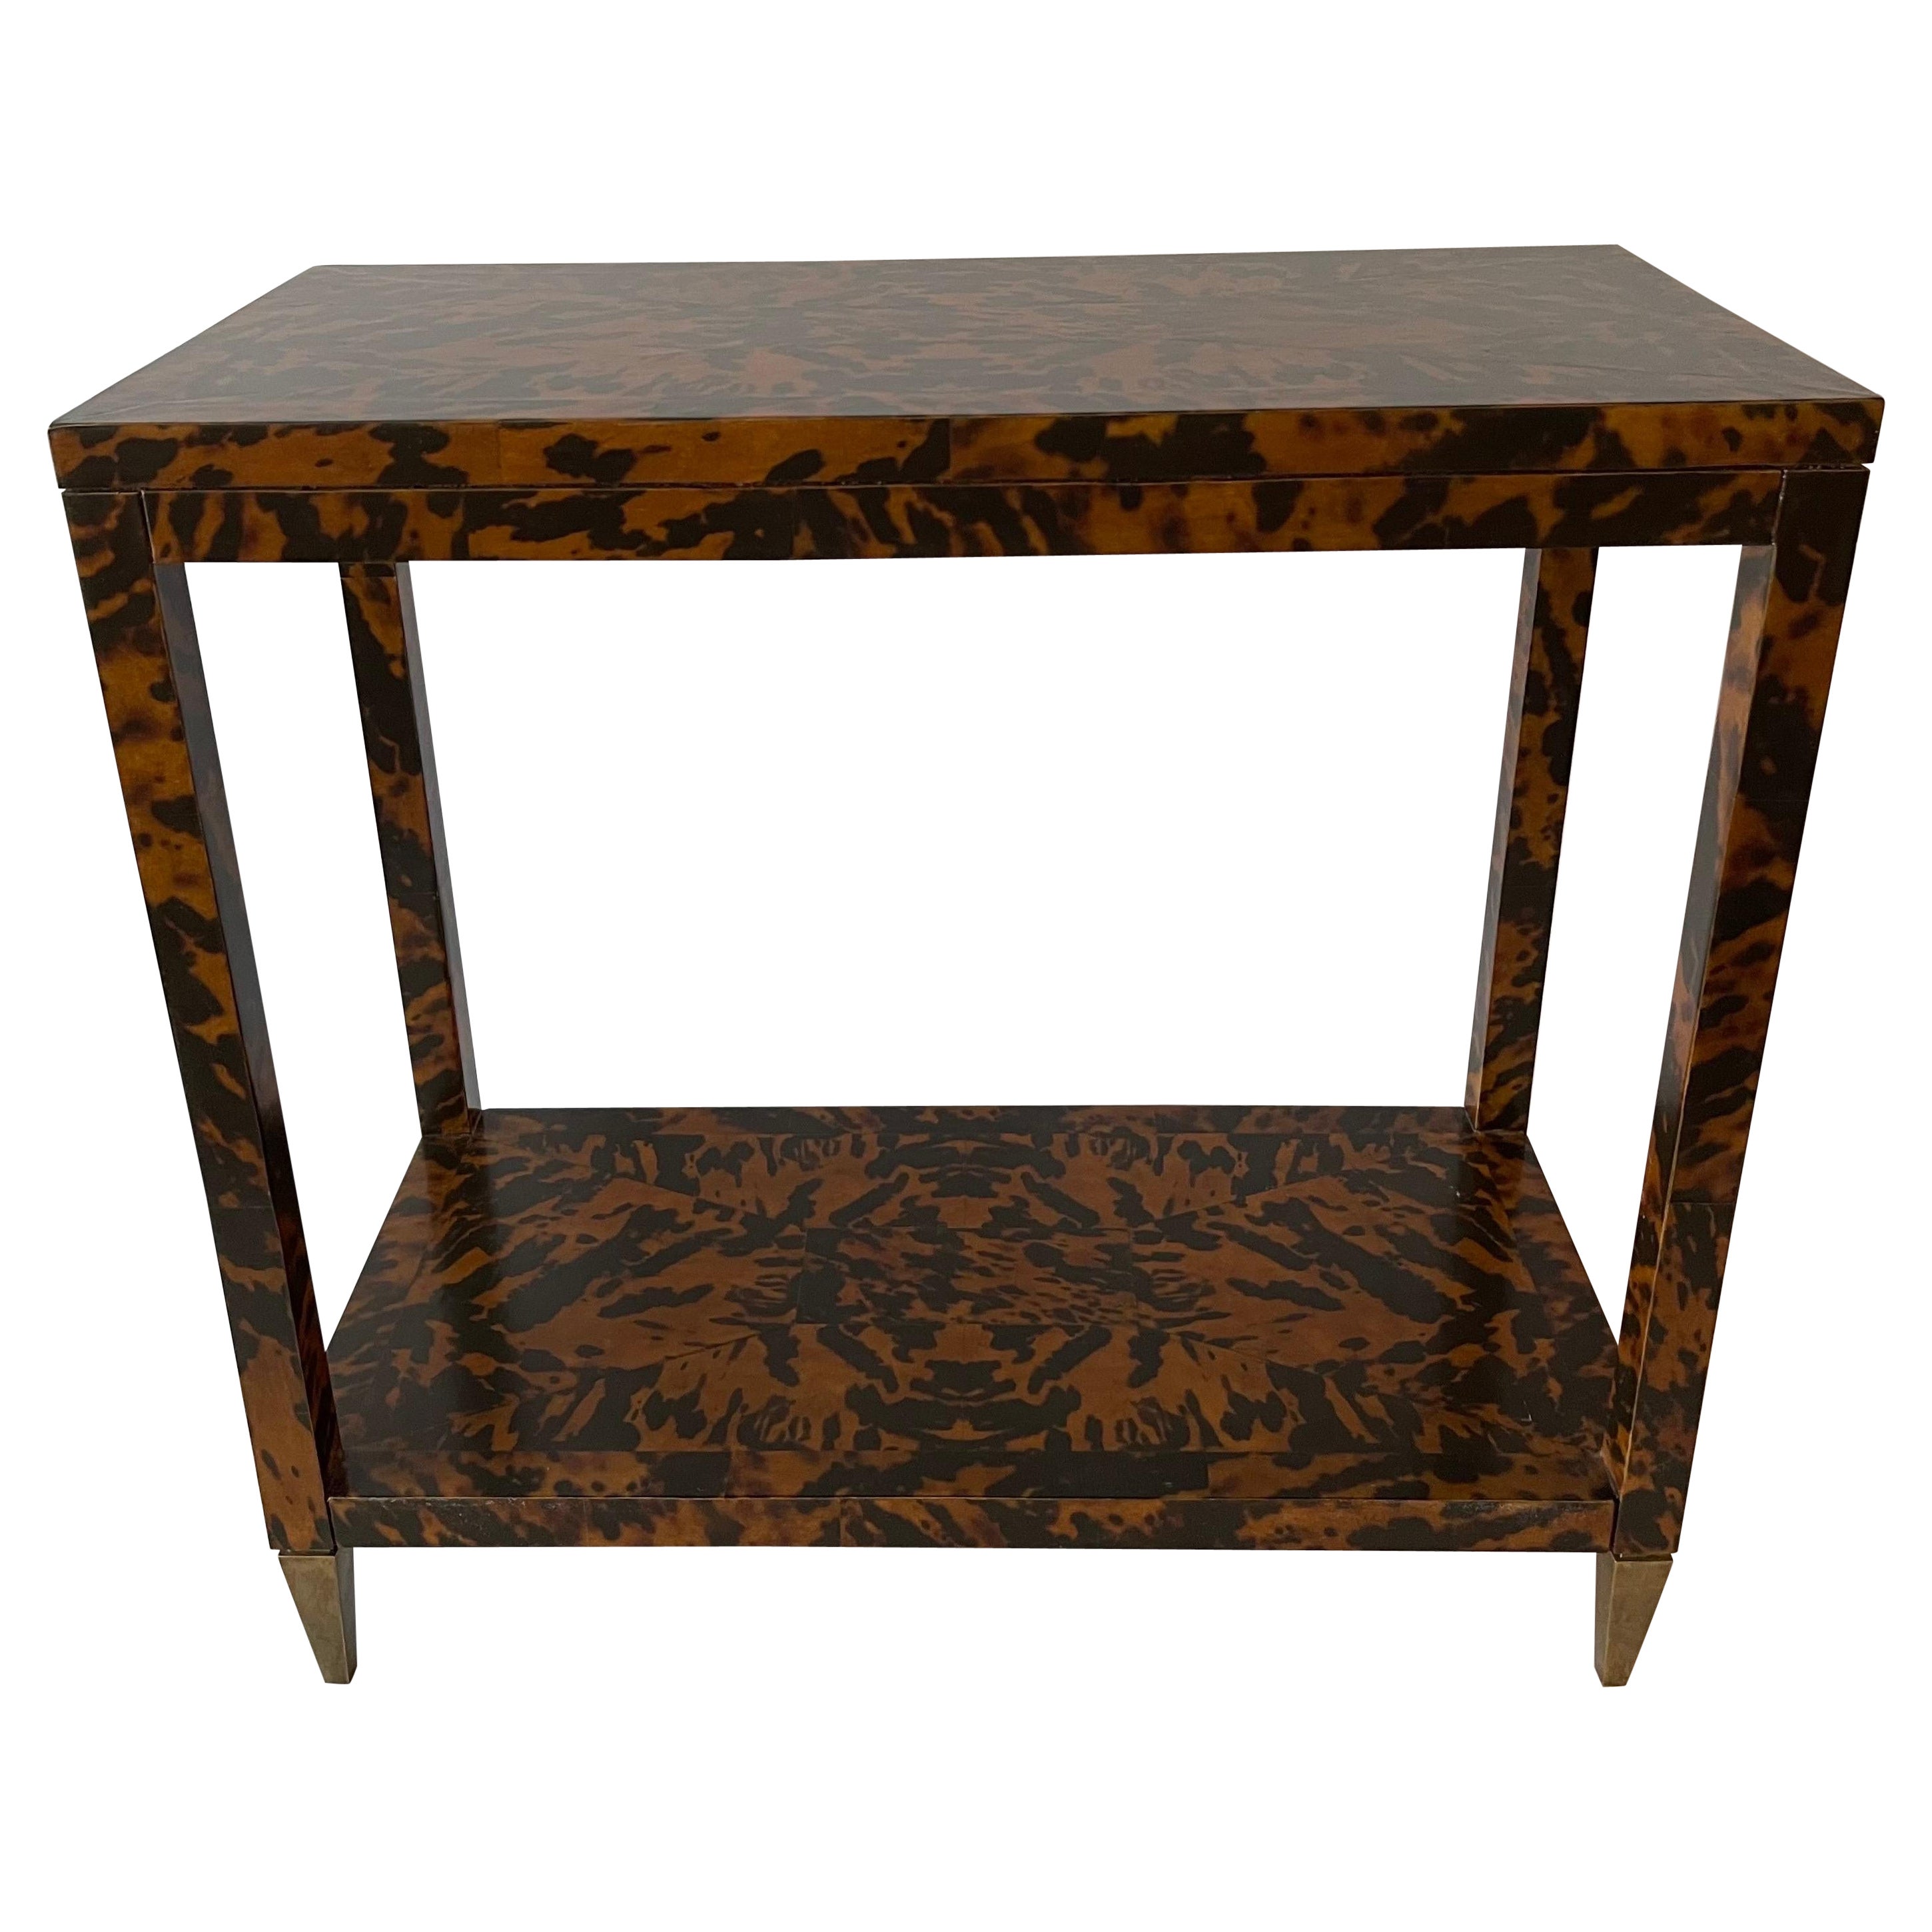 Oscar de la Renta Home by Century Furniture Co. Faux Tortoise & Brass Side Table